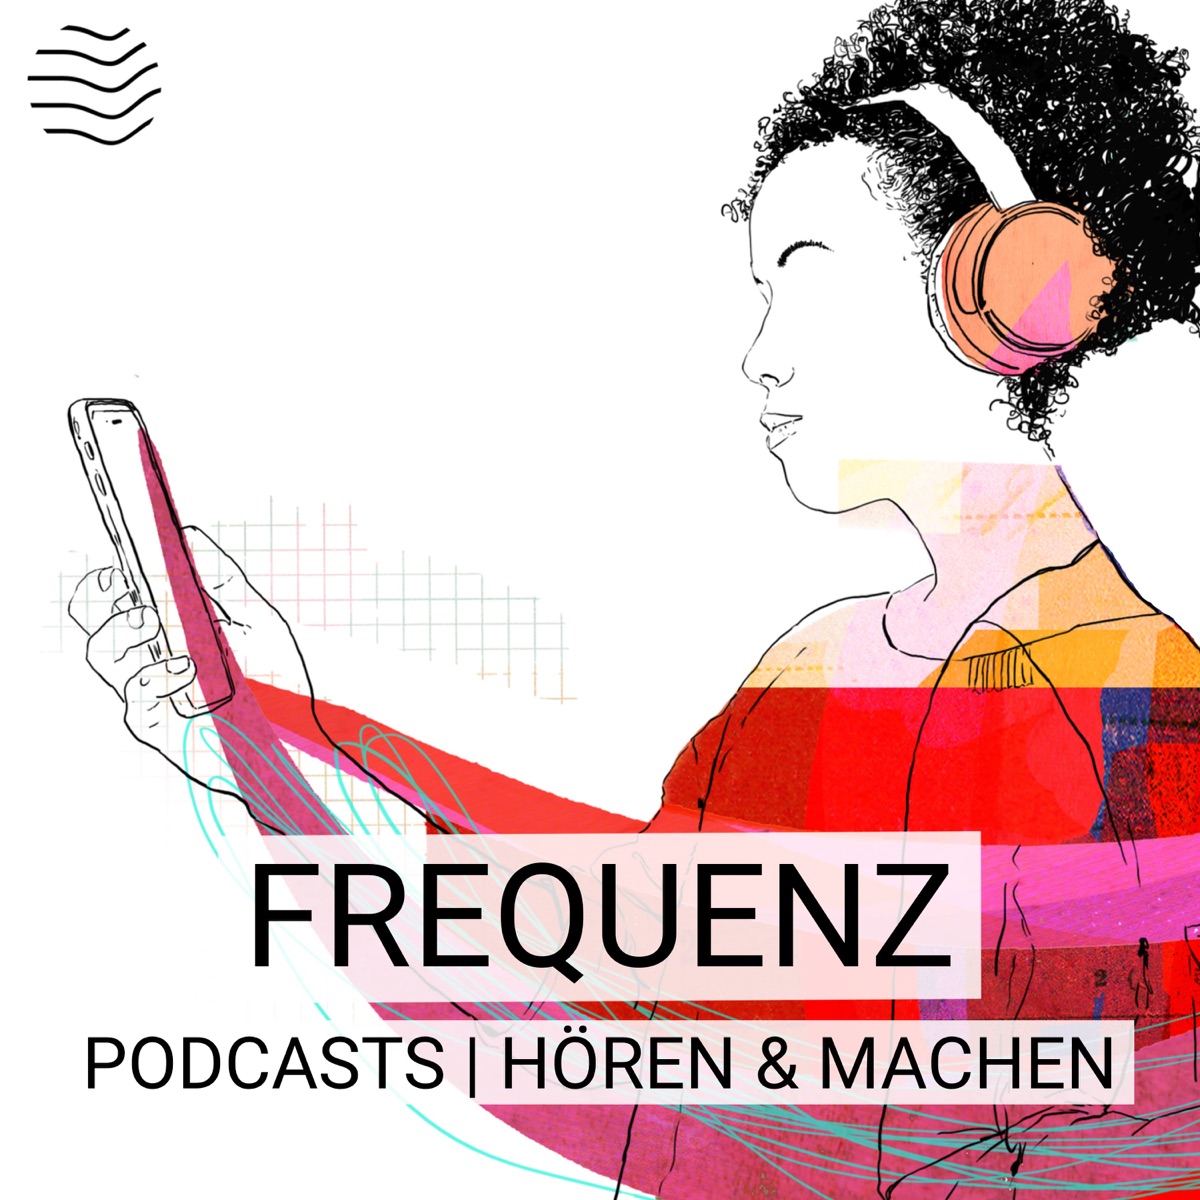 Frequenz | Podcasts hören & machen – Podcast – Podtail